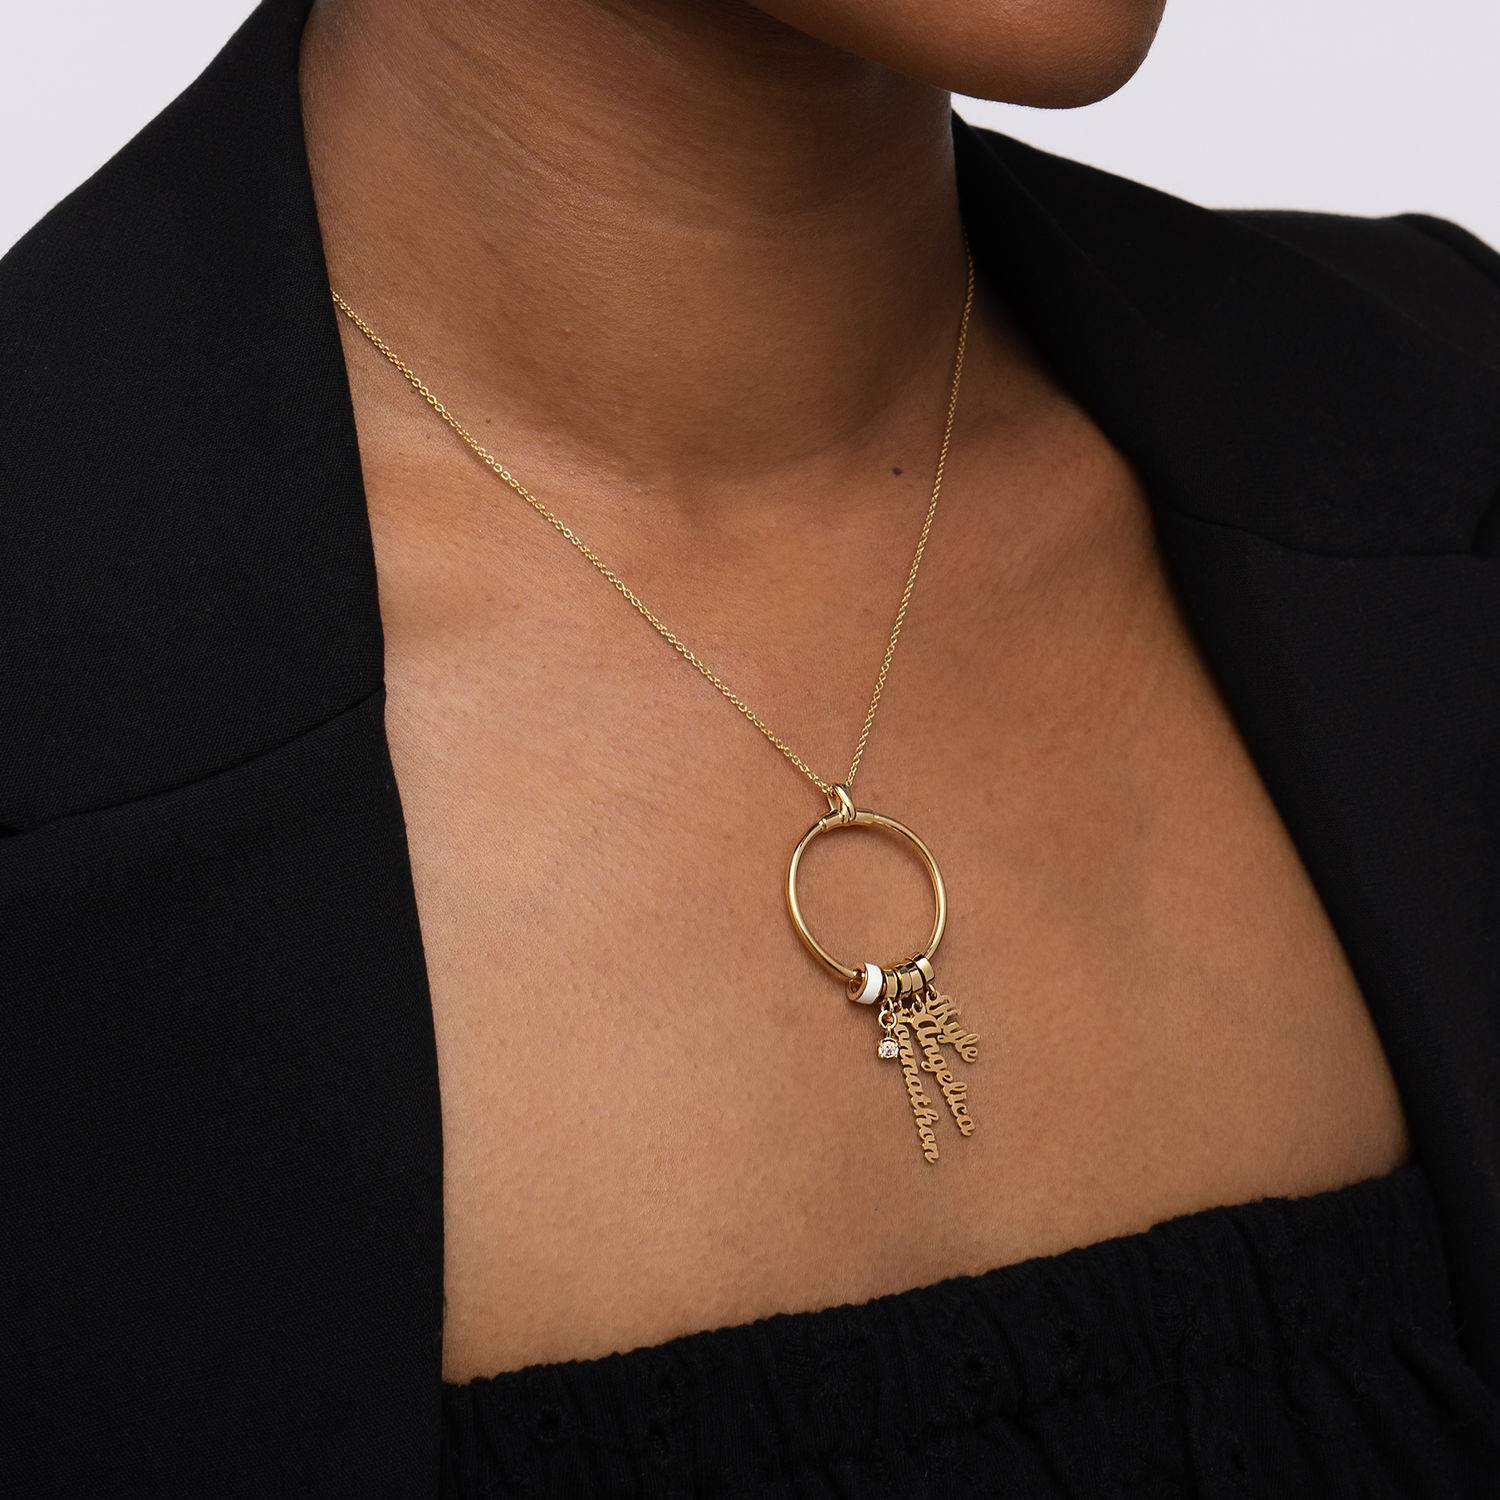 Collar vertical con nombre Linda con perla en oro Vermeil de 18K-4 foto de producto